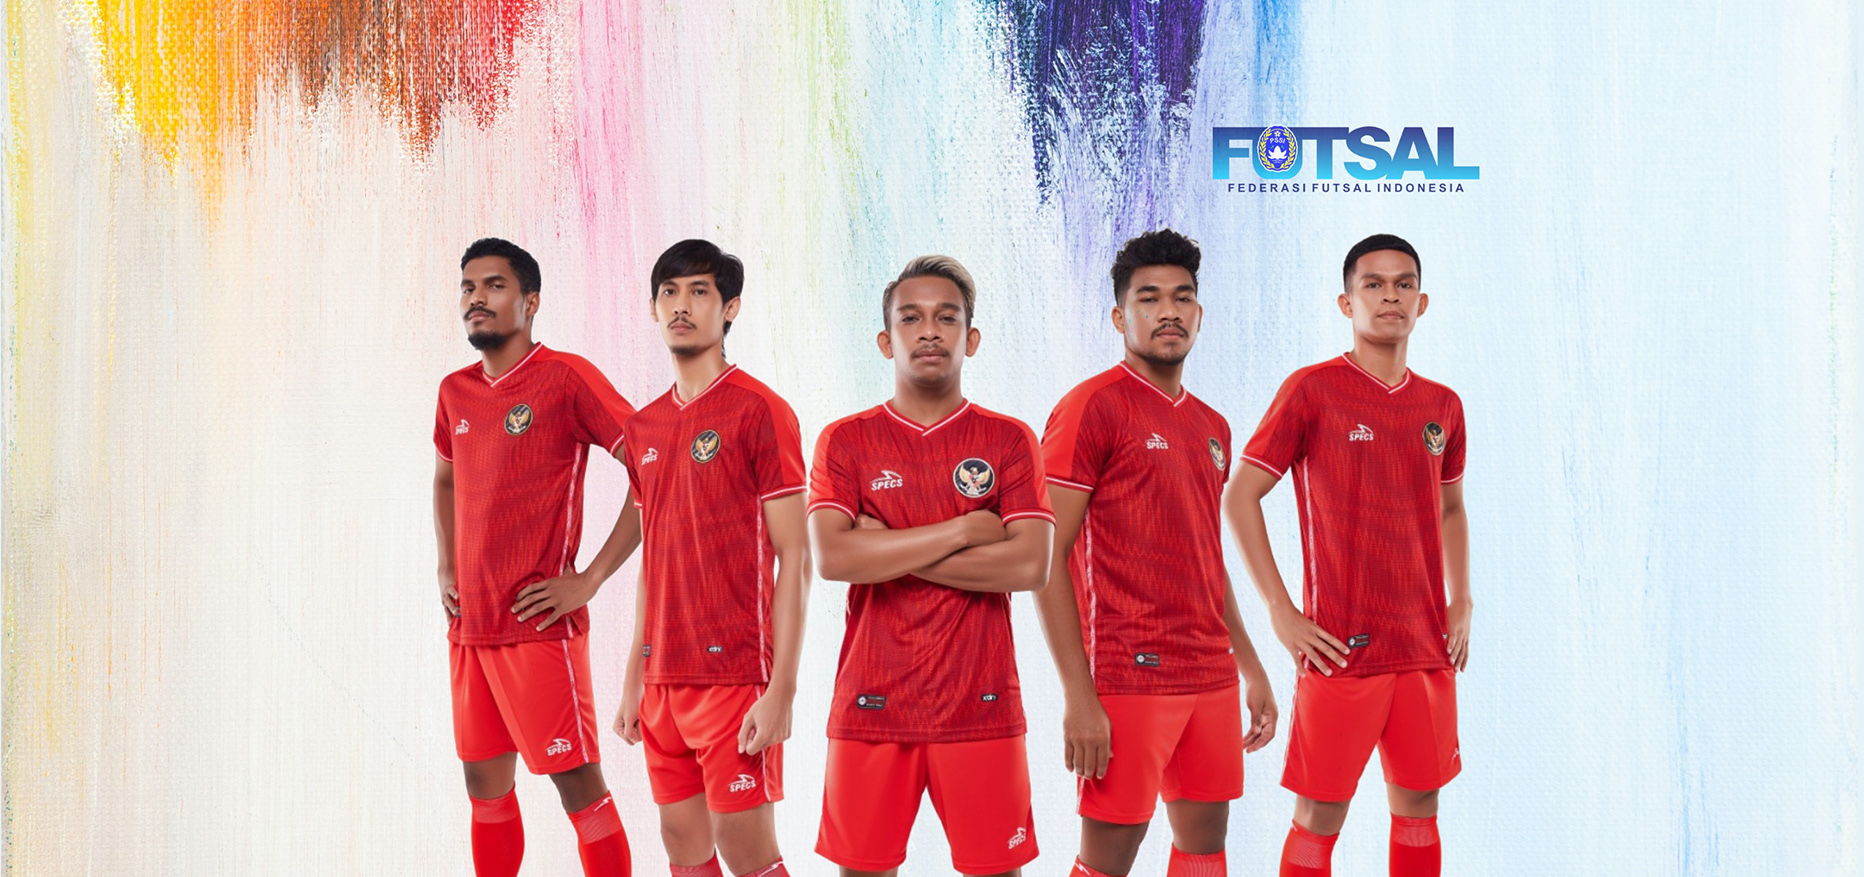 Gagal Tampil di Piala Dunia Futsal, Pelatih: Keputusan AFC Sulit Diterima